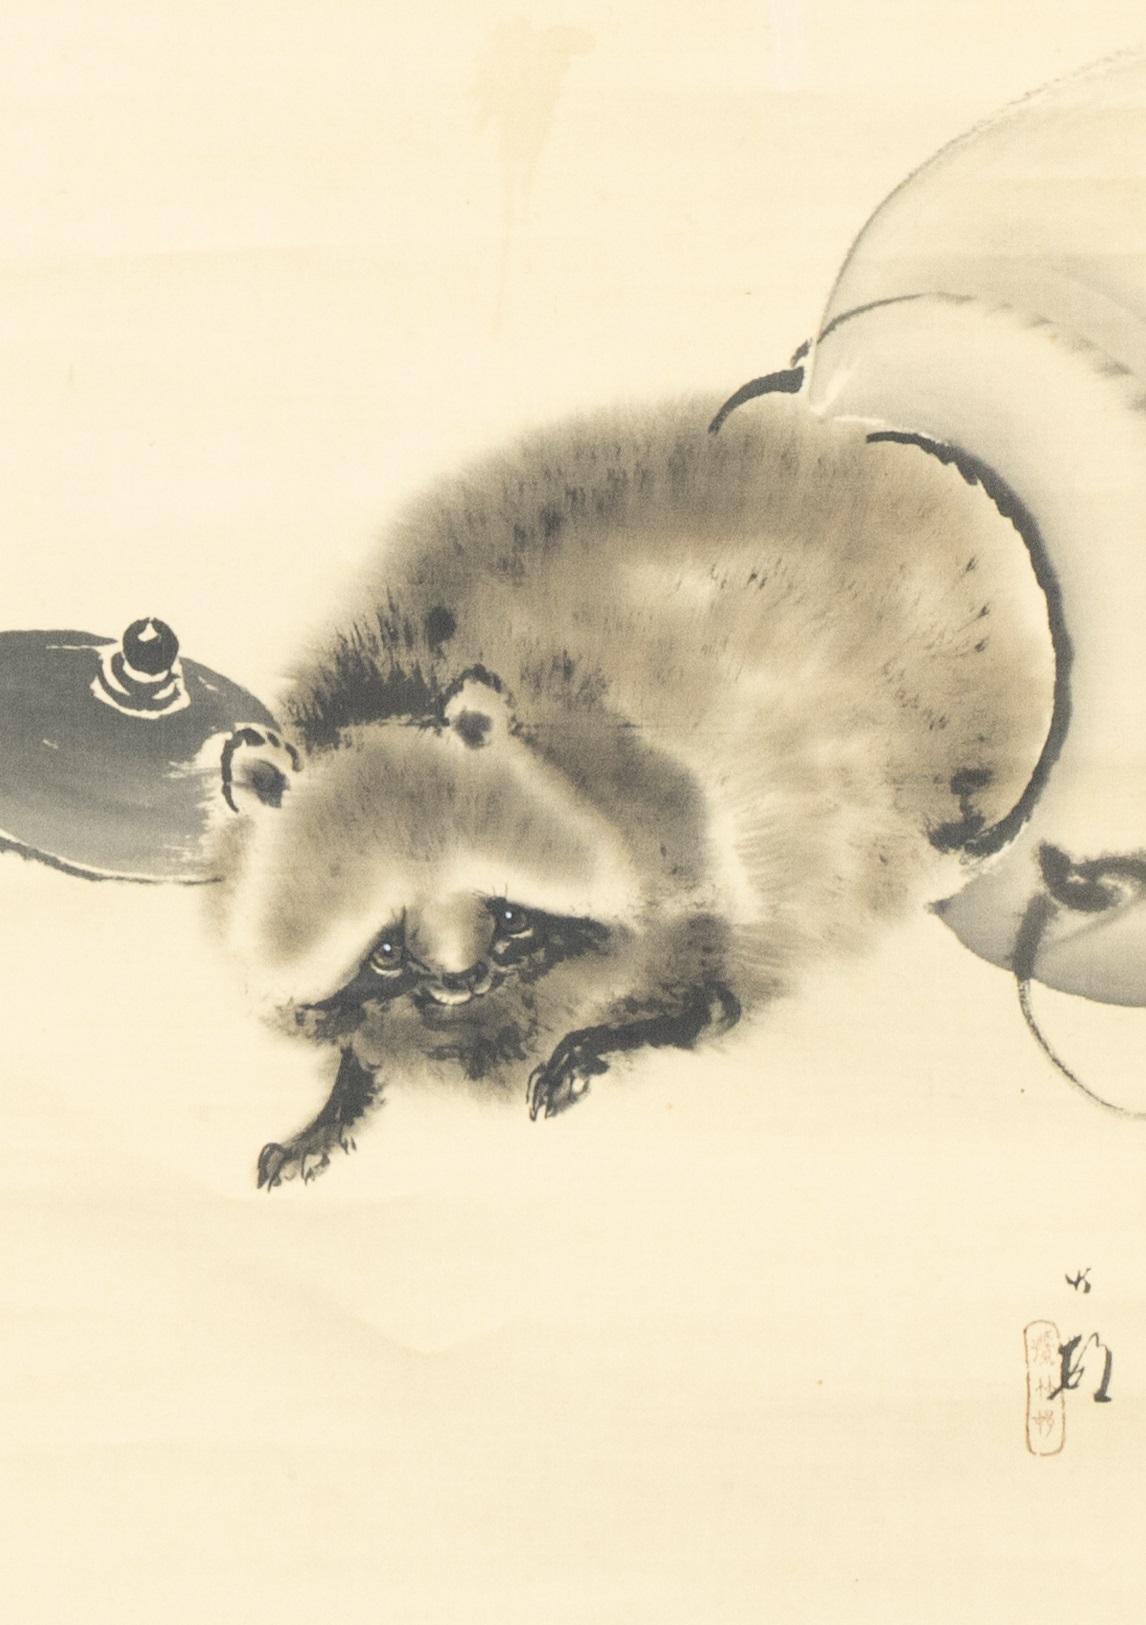 Japanse school Tanuki uit de pot
Rolschildering / scroll op zijde, benen rollers. B 108 x 31.1 / 191.5 x 43.8 cm
108 x 31.1 / 191.5 x 43.8 cm